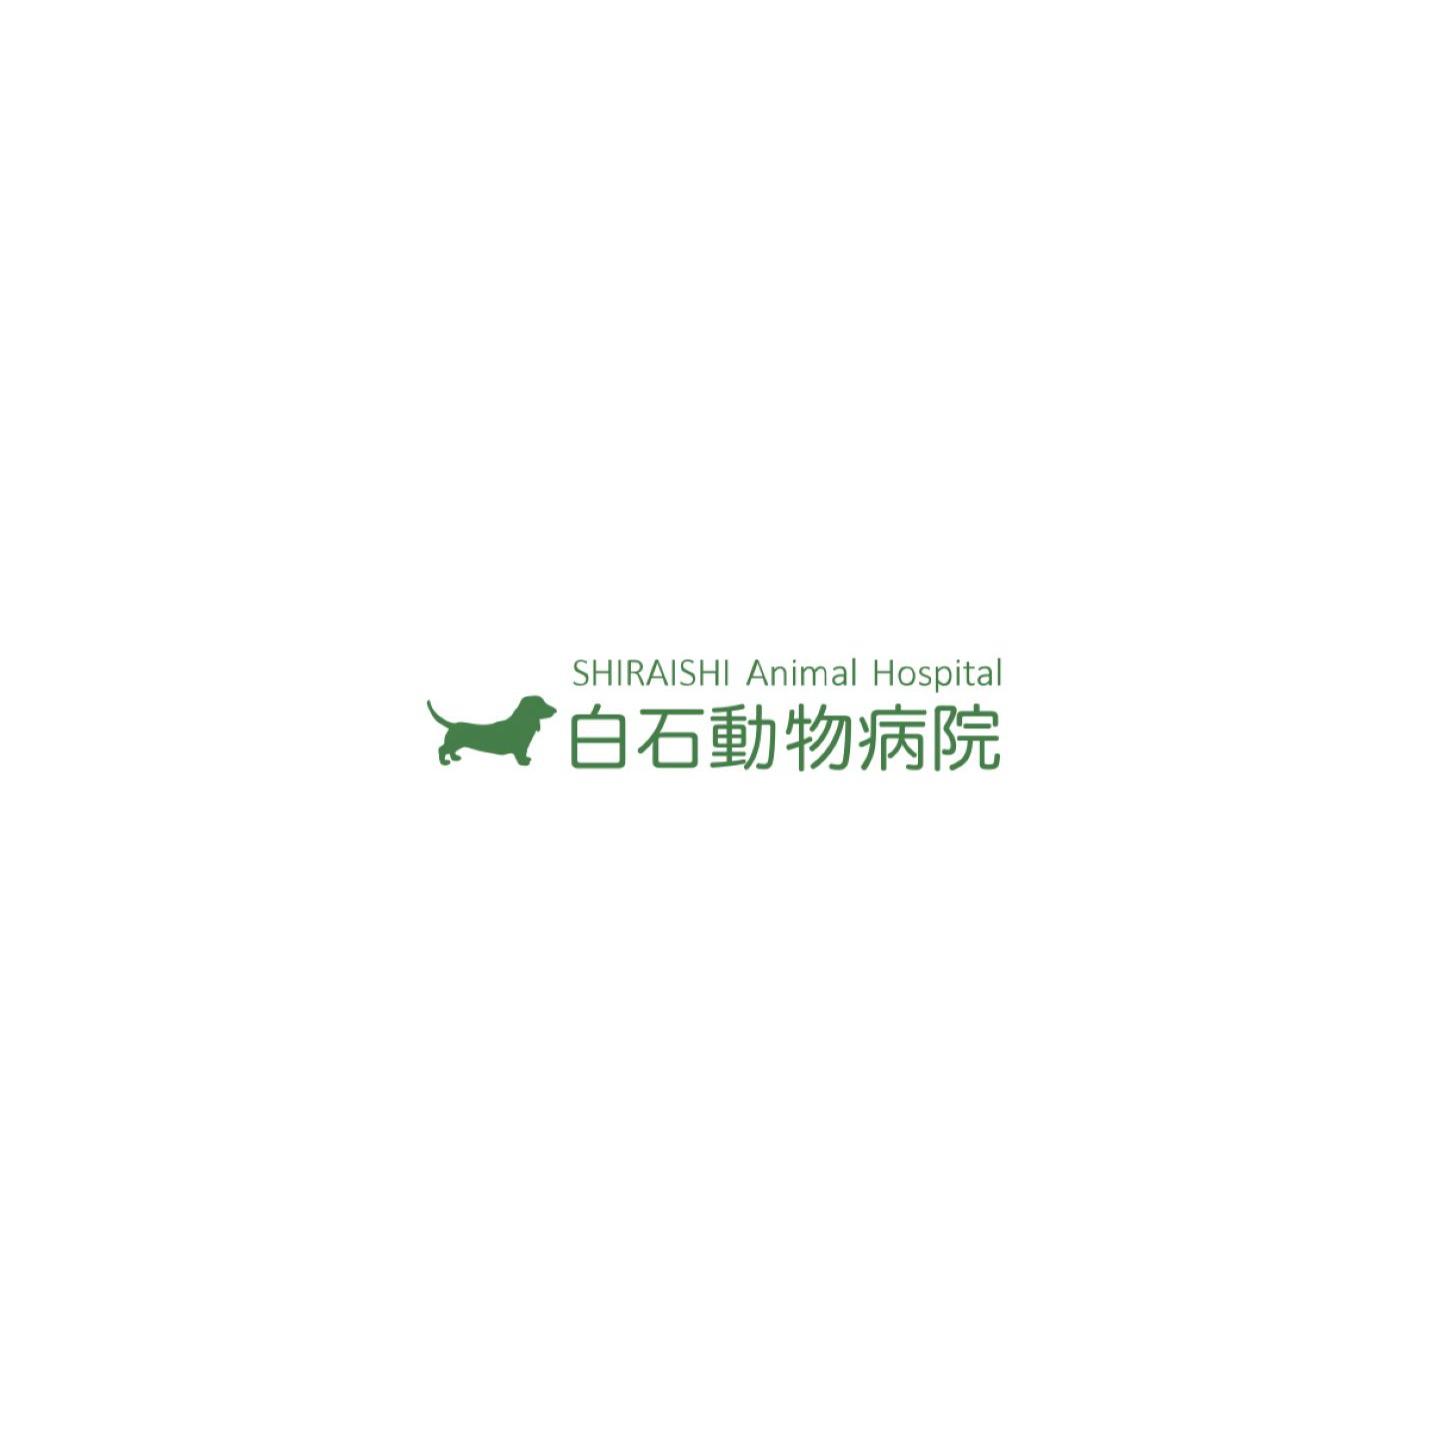 白石動物病院 Logo